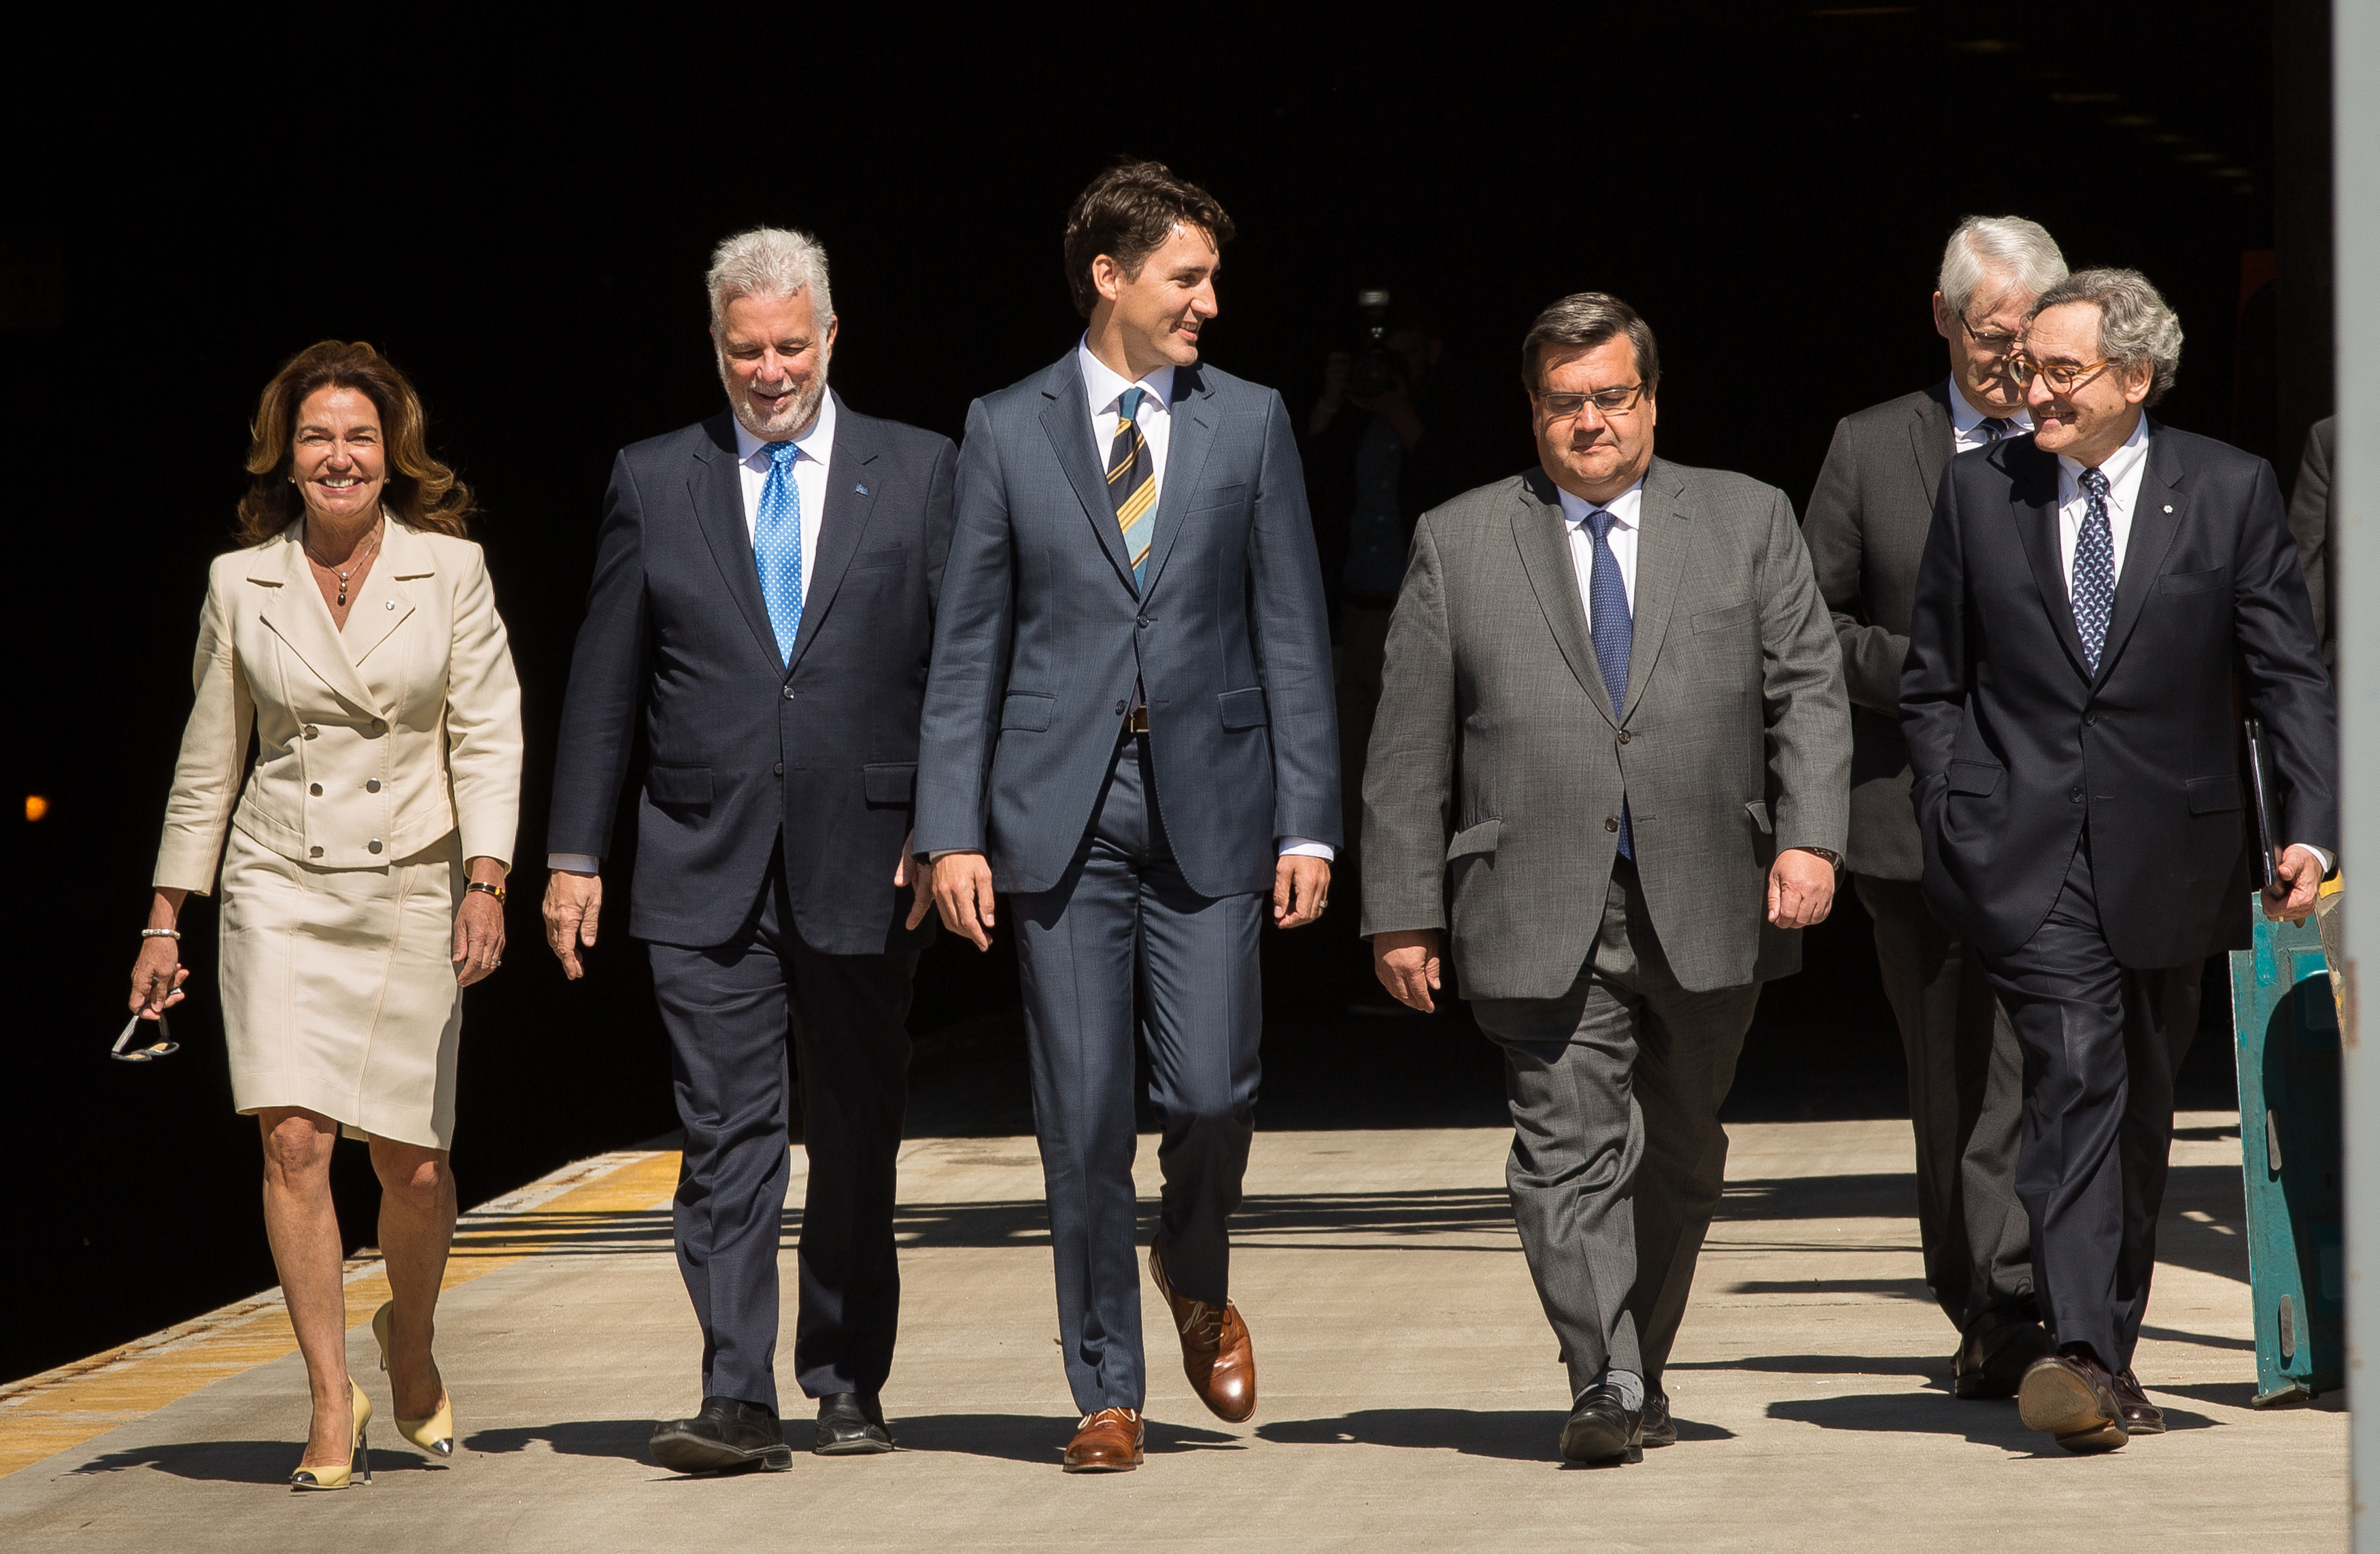 The Government of Canada confirms a $1.28-billion investment in the Réseau électrique métropolitain project